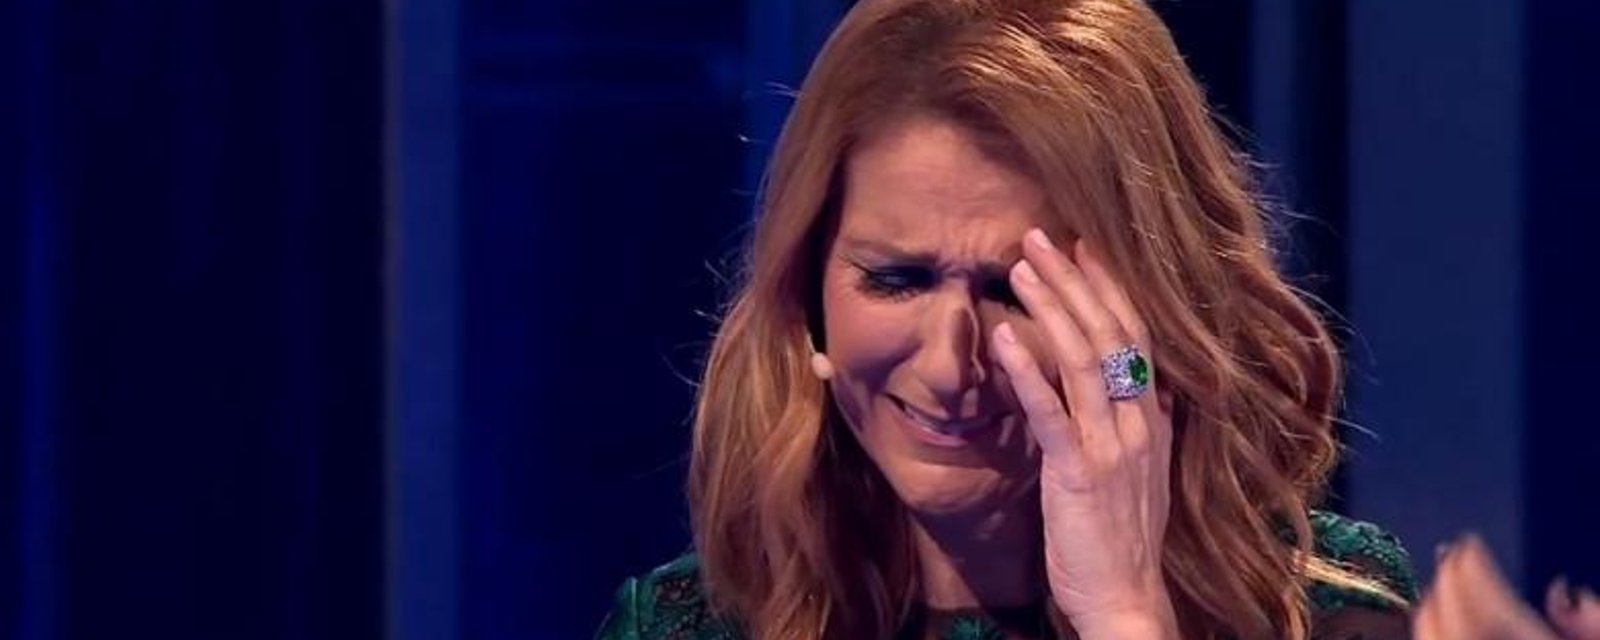 Céline Dion explose en larmes à la télévision...